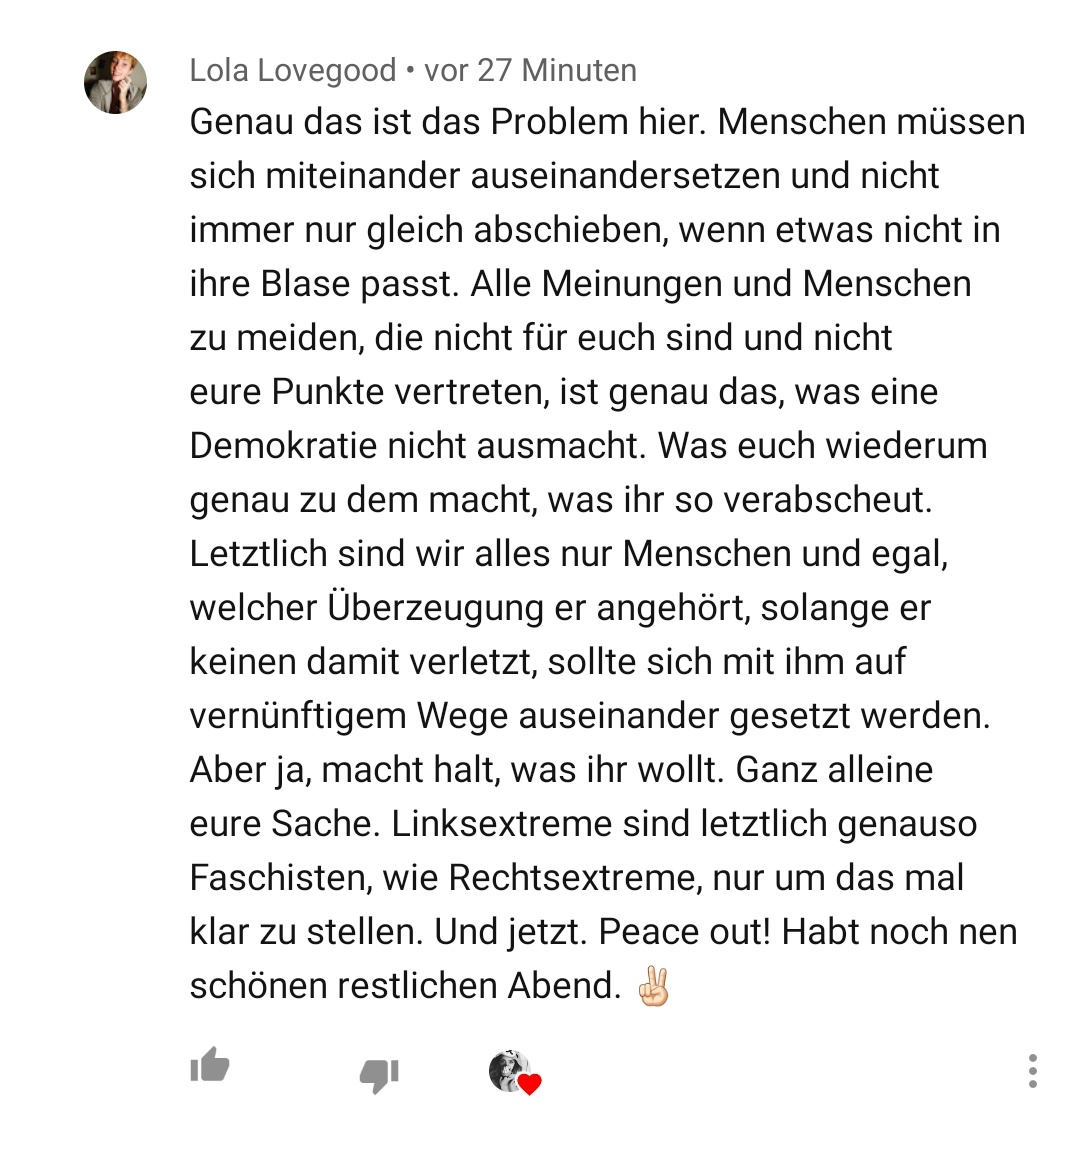 Auch zum öffentlich rechtlichen Rundfunk hat Luisa Franziska Riegert bereits erste Verschwörungsthesen verinnerlicht.Einen Kommentar, in dem "Linksextreme" als "Faschisten" bezeichnet werden, gefällt Luisa. Der AfD ganz sicher auch.